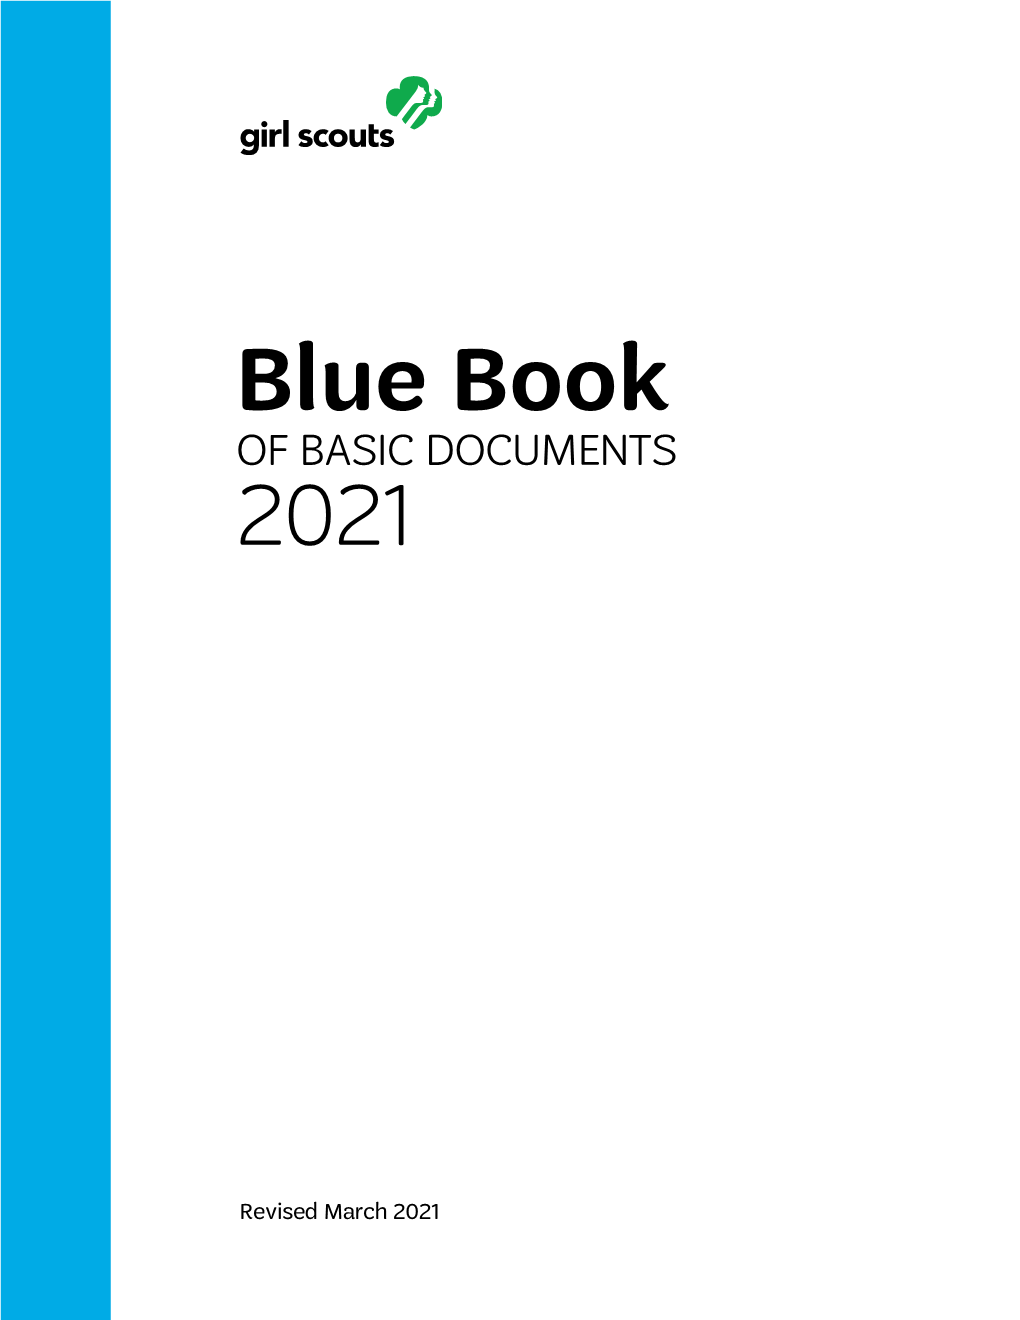 Blue Book 2021